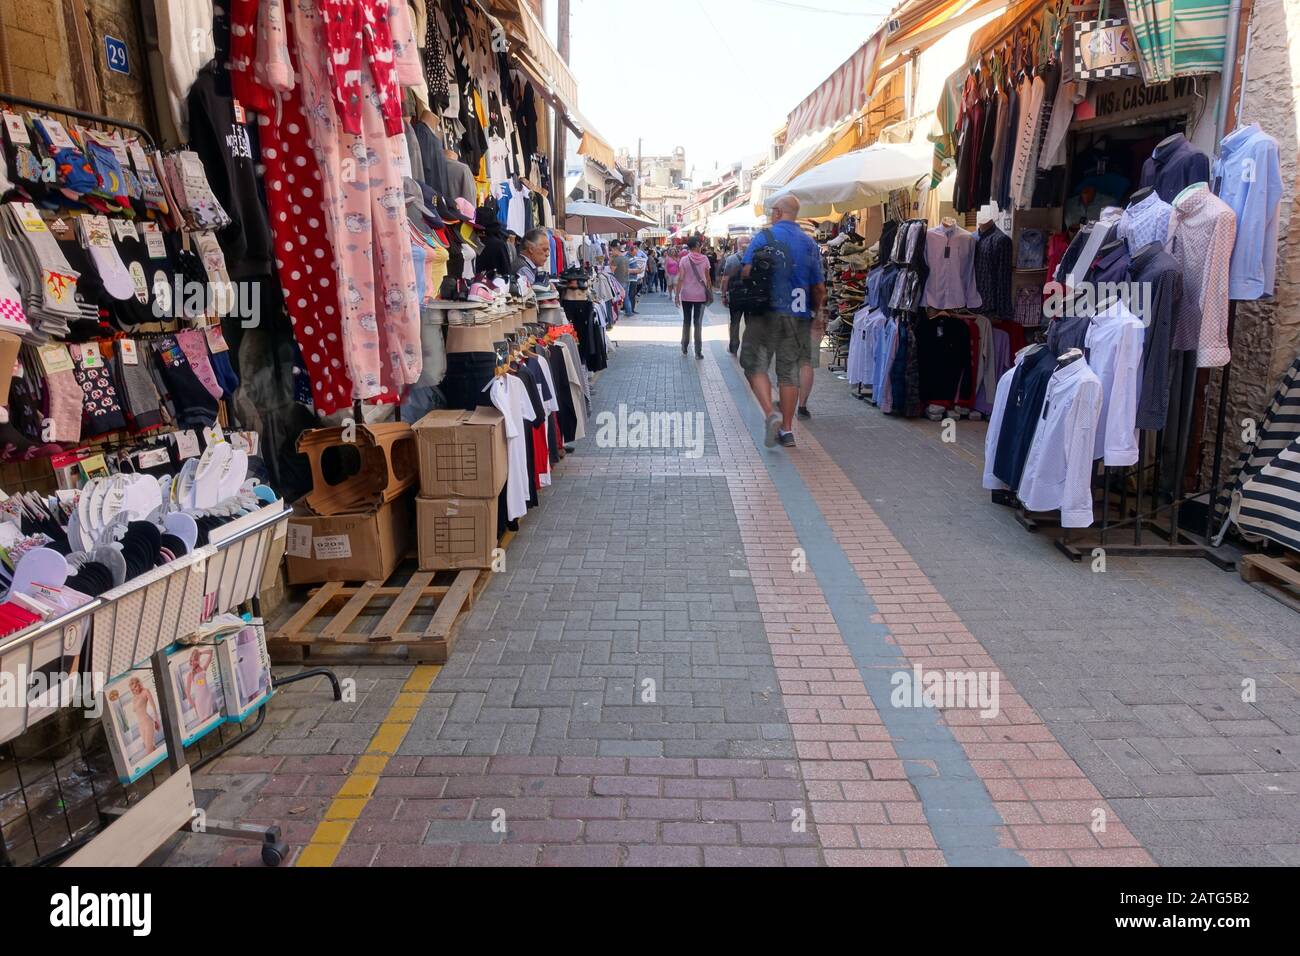 Textilien vor dem Geschäft - Einkaufstrasse in Nord-Nikosia, Türkische Republik Nordzypern Stock Photo